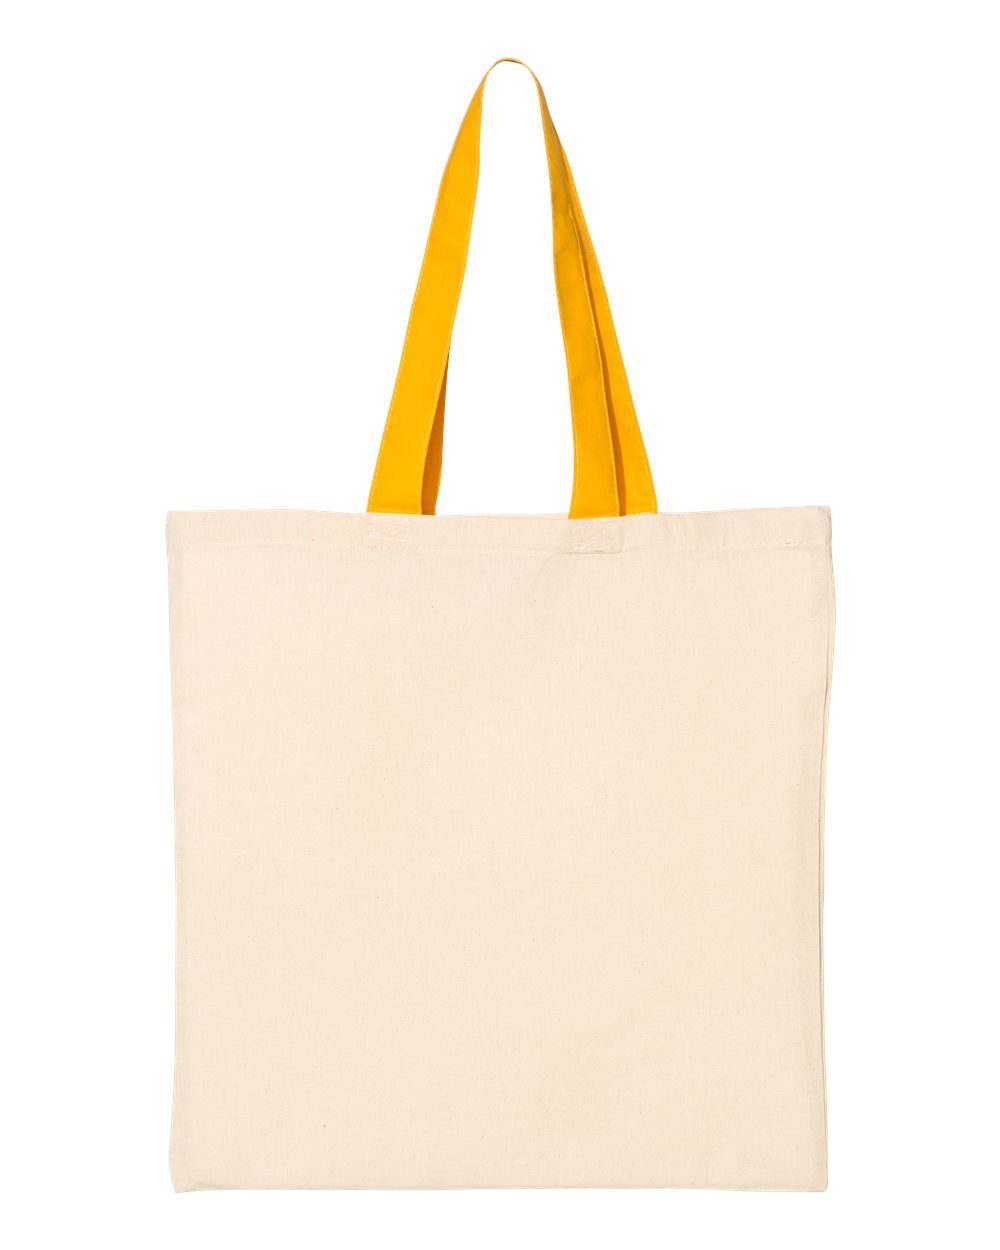 Q-Tees - Economical Tote Bag - QTB – Gigraffe Design Studio & Print Shop